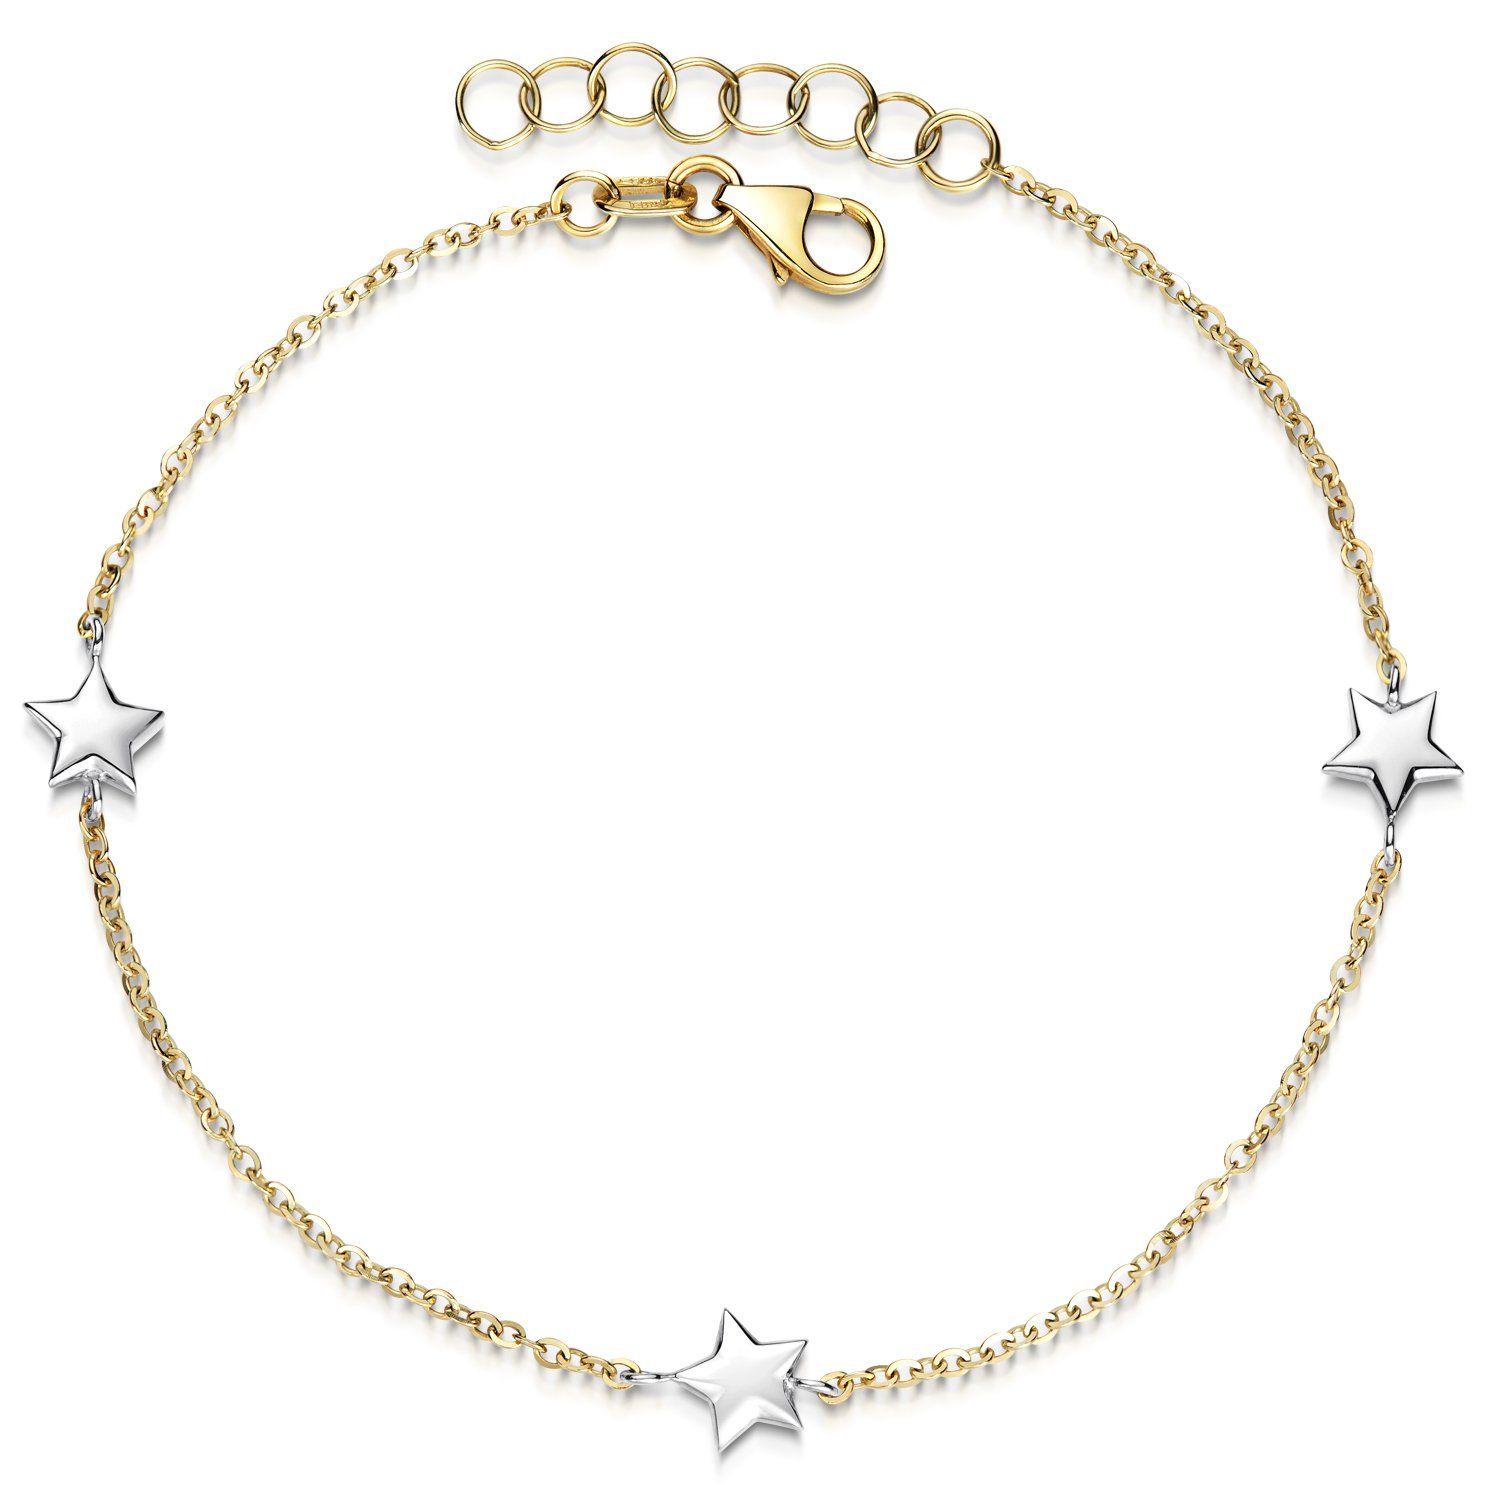 Gelbgold, GA-16, 16-18cm Armkette / Kinderarmband Echtgold 375 Sternchen 375 Materia Weißgold Sterne